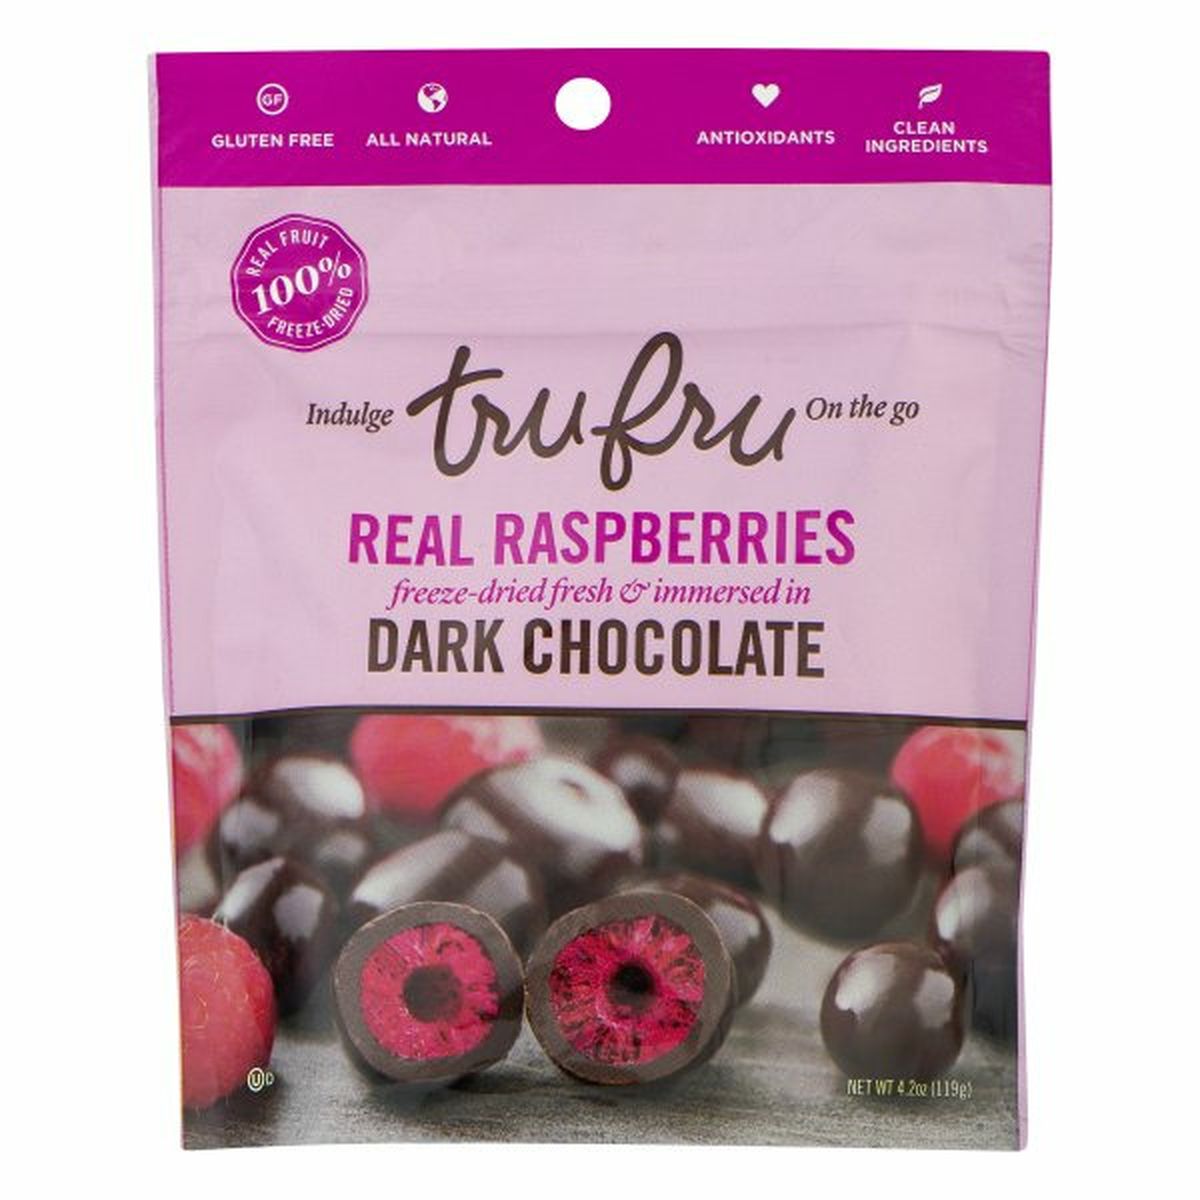 Calories in Tru Fru Real Raspberries, Dark Chocolate